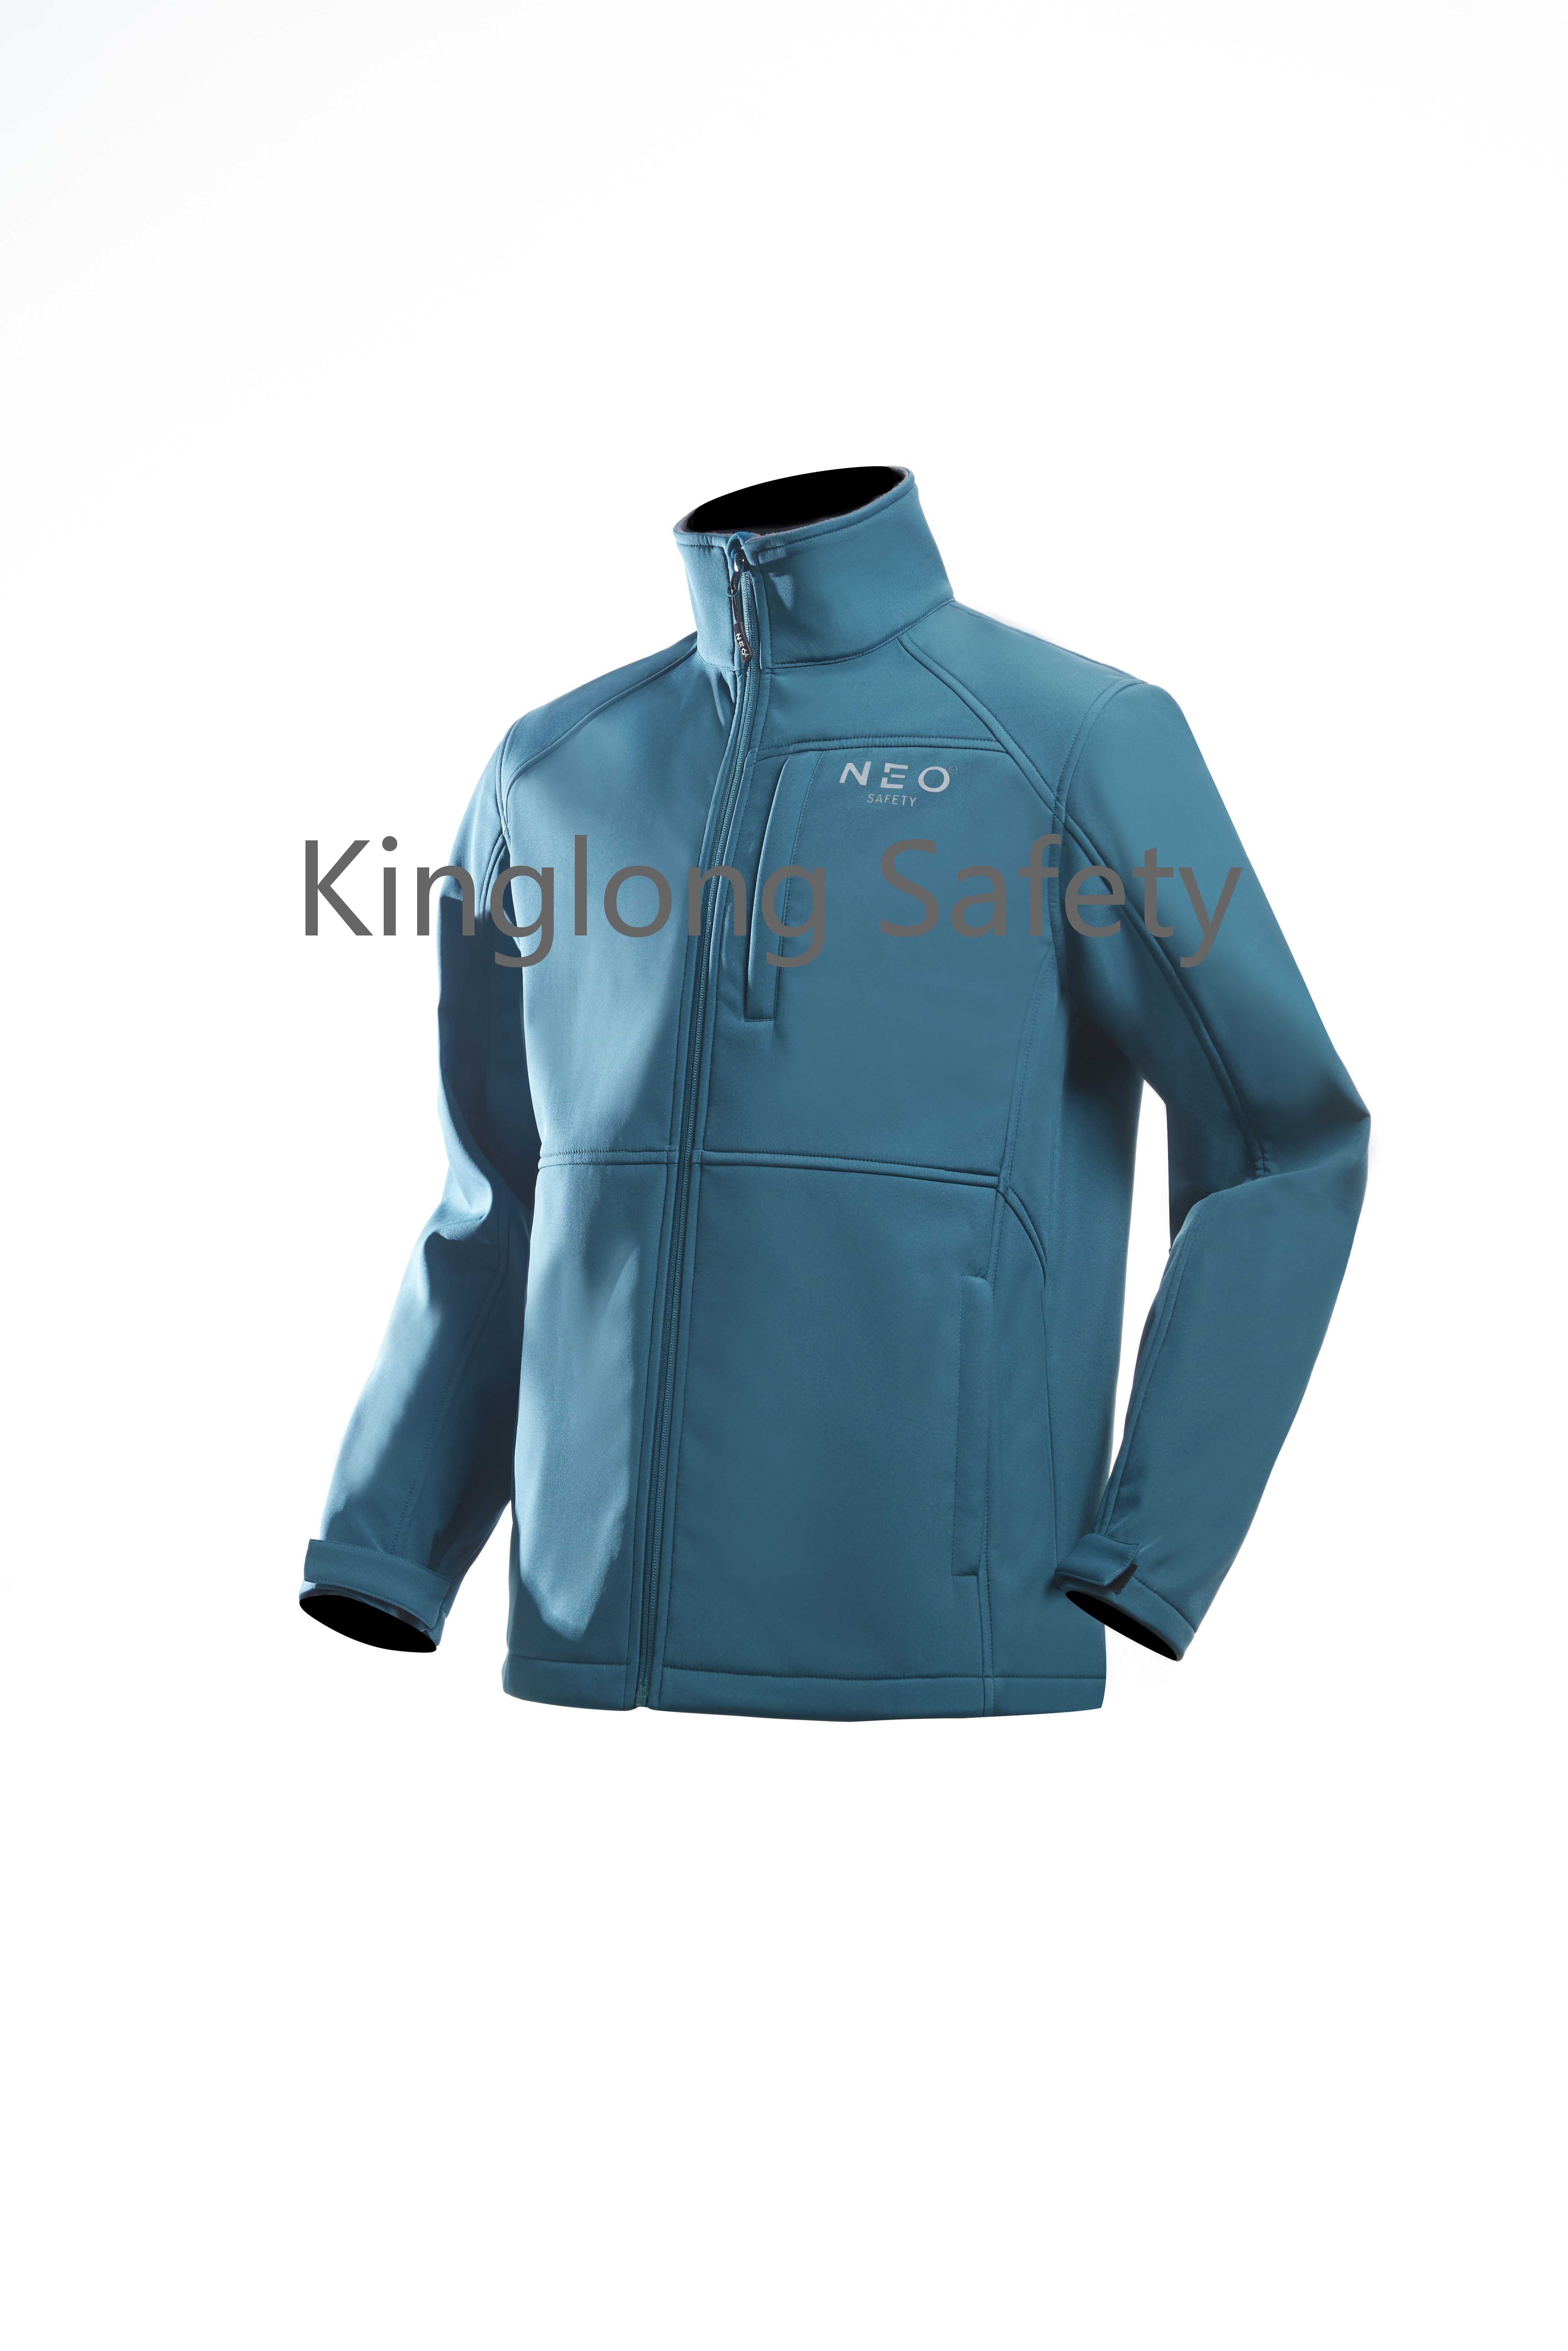 Κίνα OEM νέα ζακέτα με φερμουάρ γιακάς μπλε χρώματα αντιανεμικό softshell jacket Κίνα προμήθεια συνδυασμού χρωμάτων softshell jacket κατασκευαστής